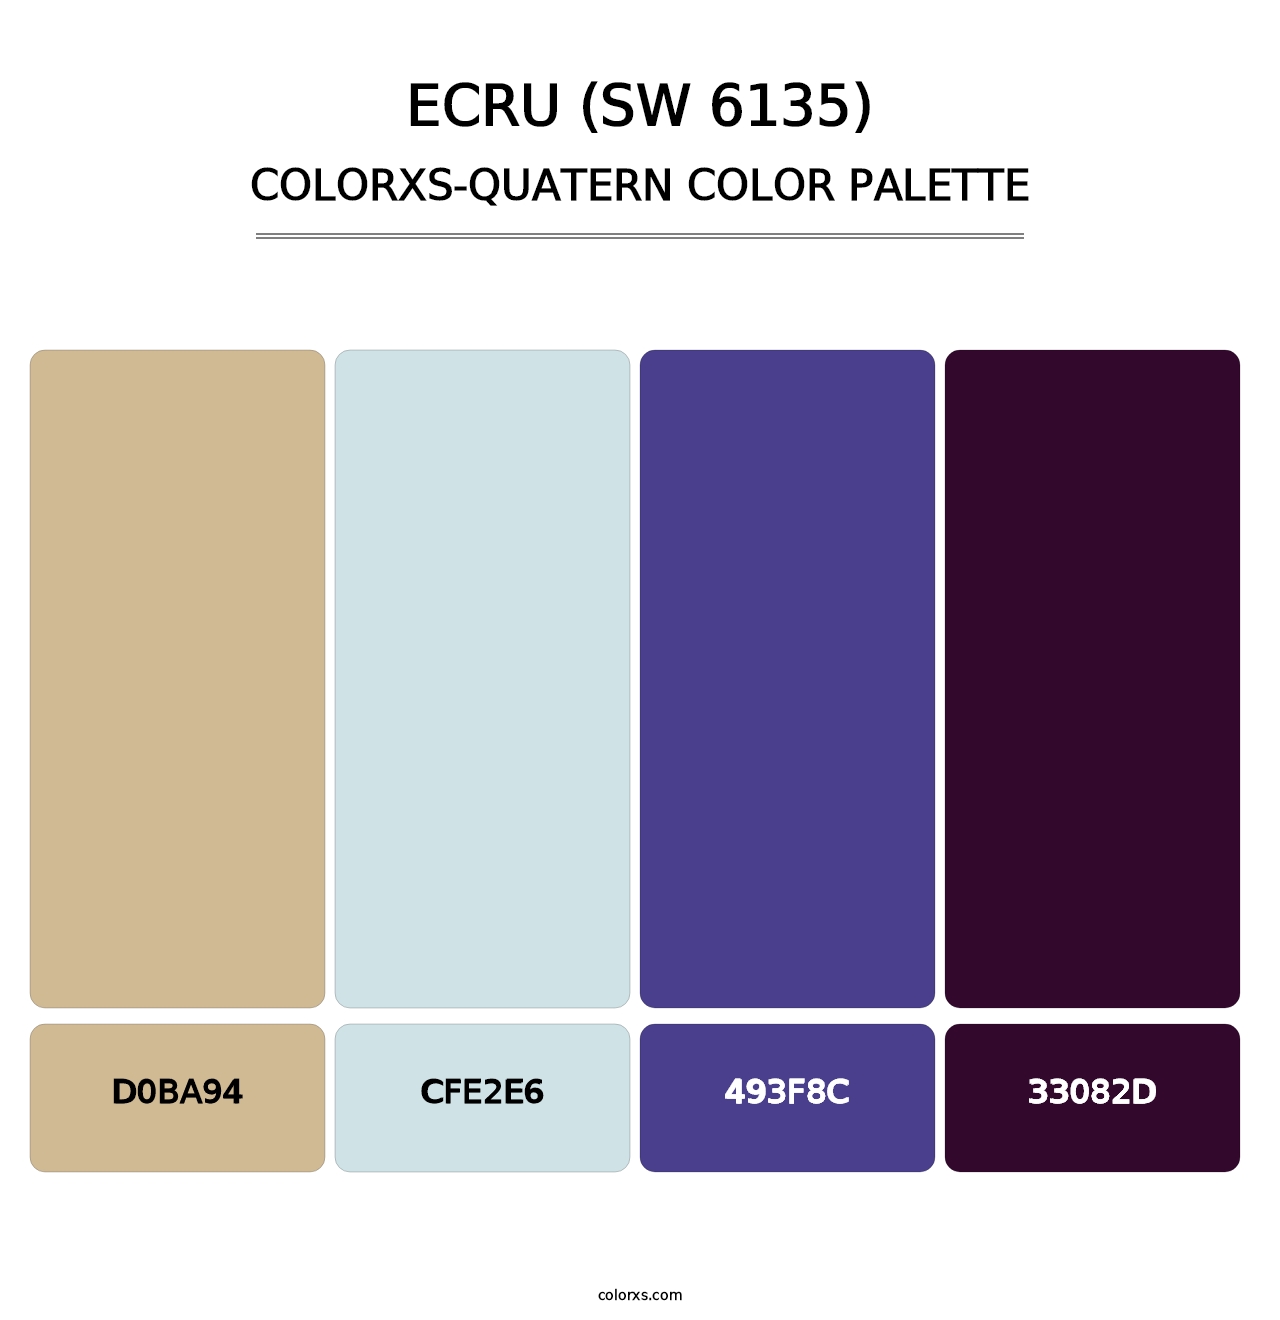 Ecru (SW 6135) - Colorxs Quatern Palette